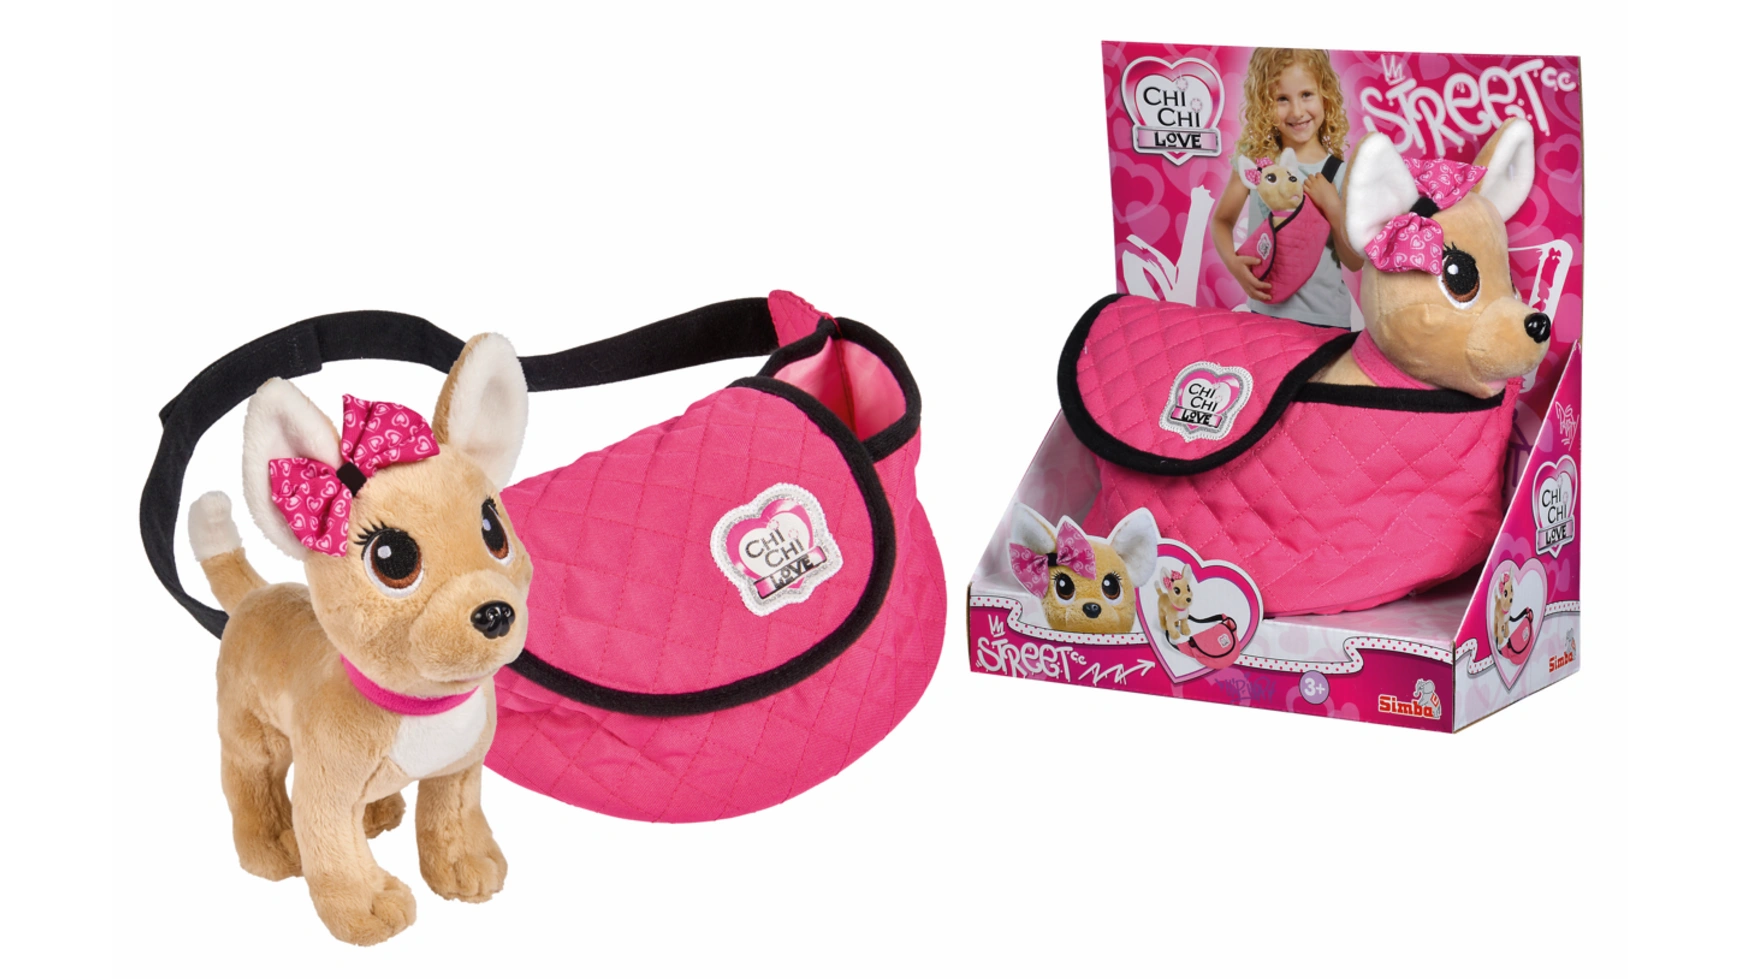 цена Chi chi love плюшевая собака ccl street chihuahua в модной поясной сумке регулируемый ремень Simba